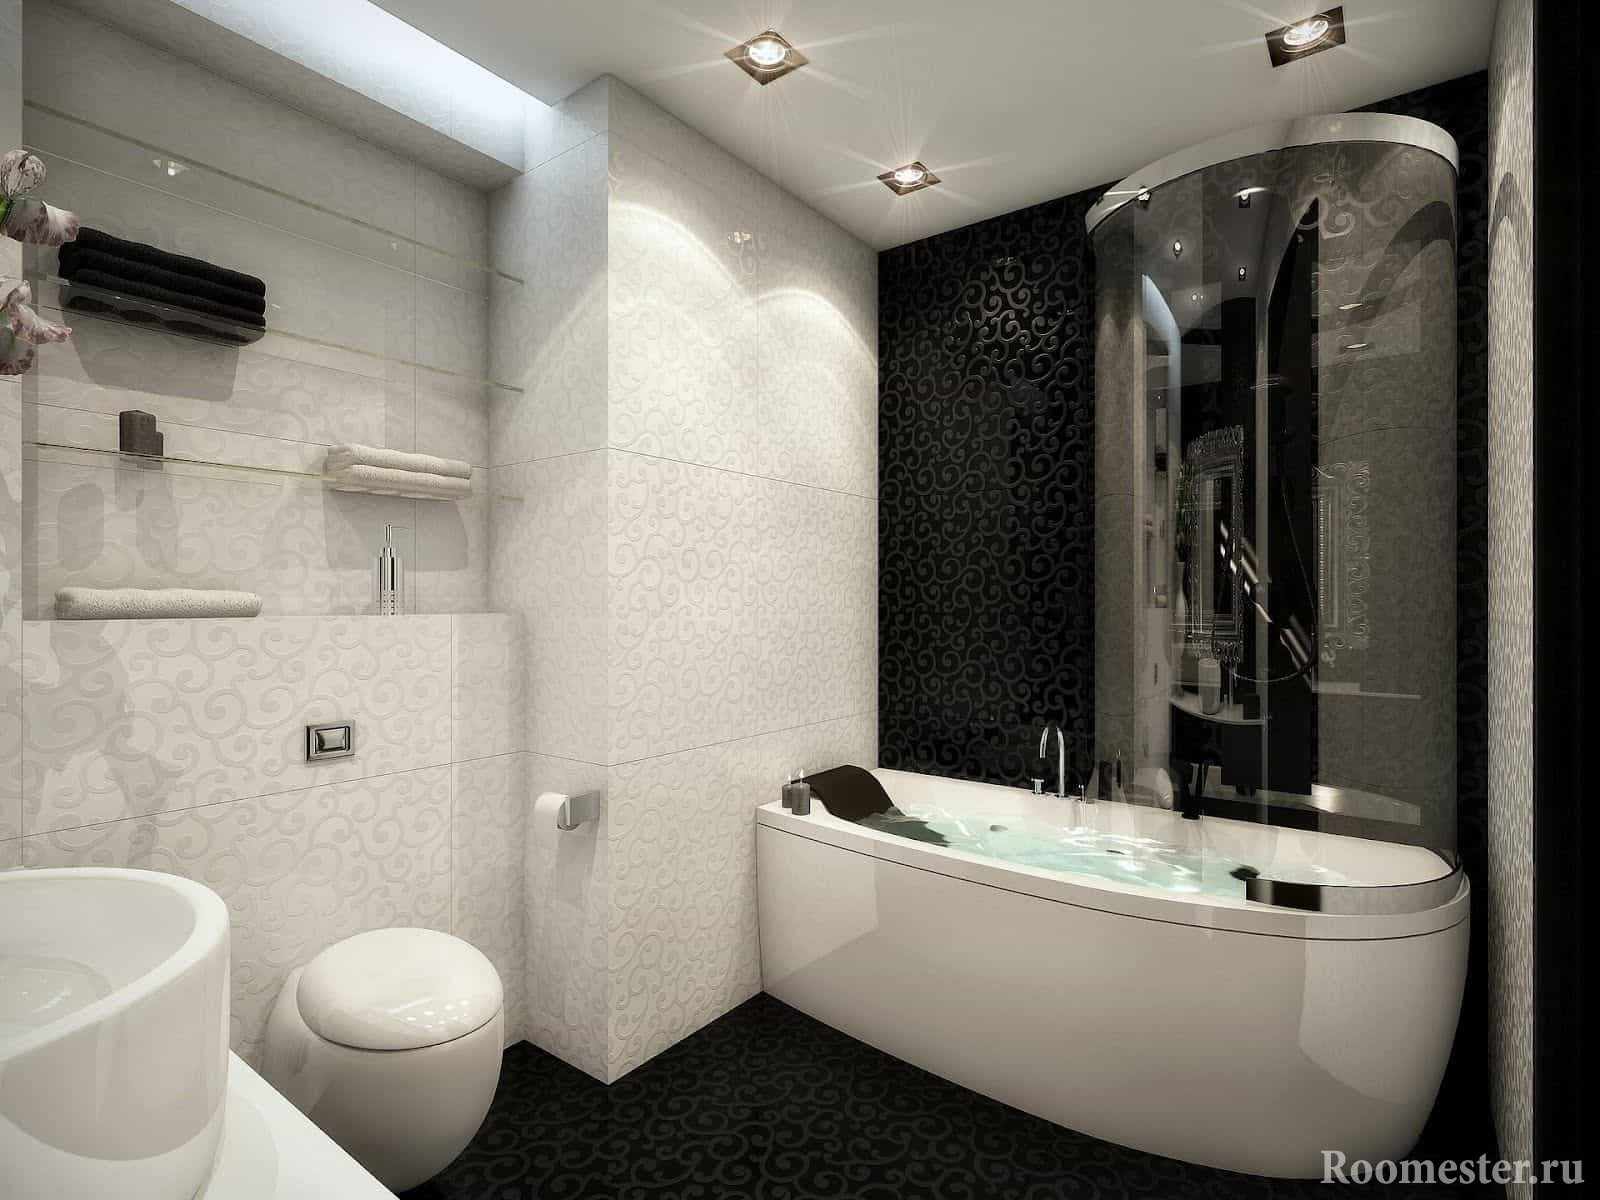 Сочетание белой и черной плитки в ванной комнате